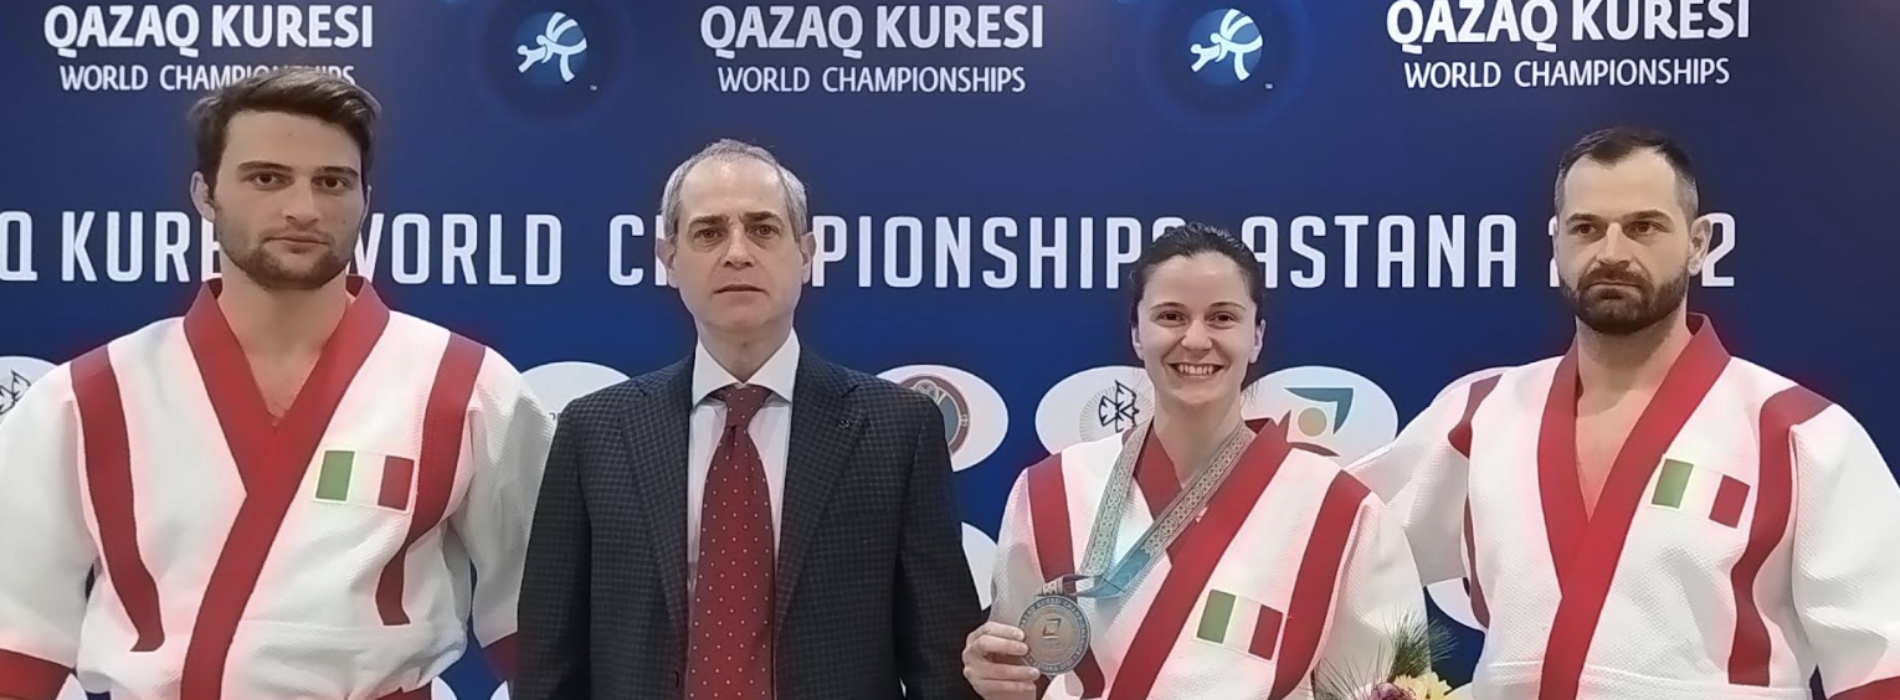 Mondiali Qazaq Kuresi ad Astana. E’ bronzo per l’Italia